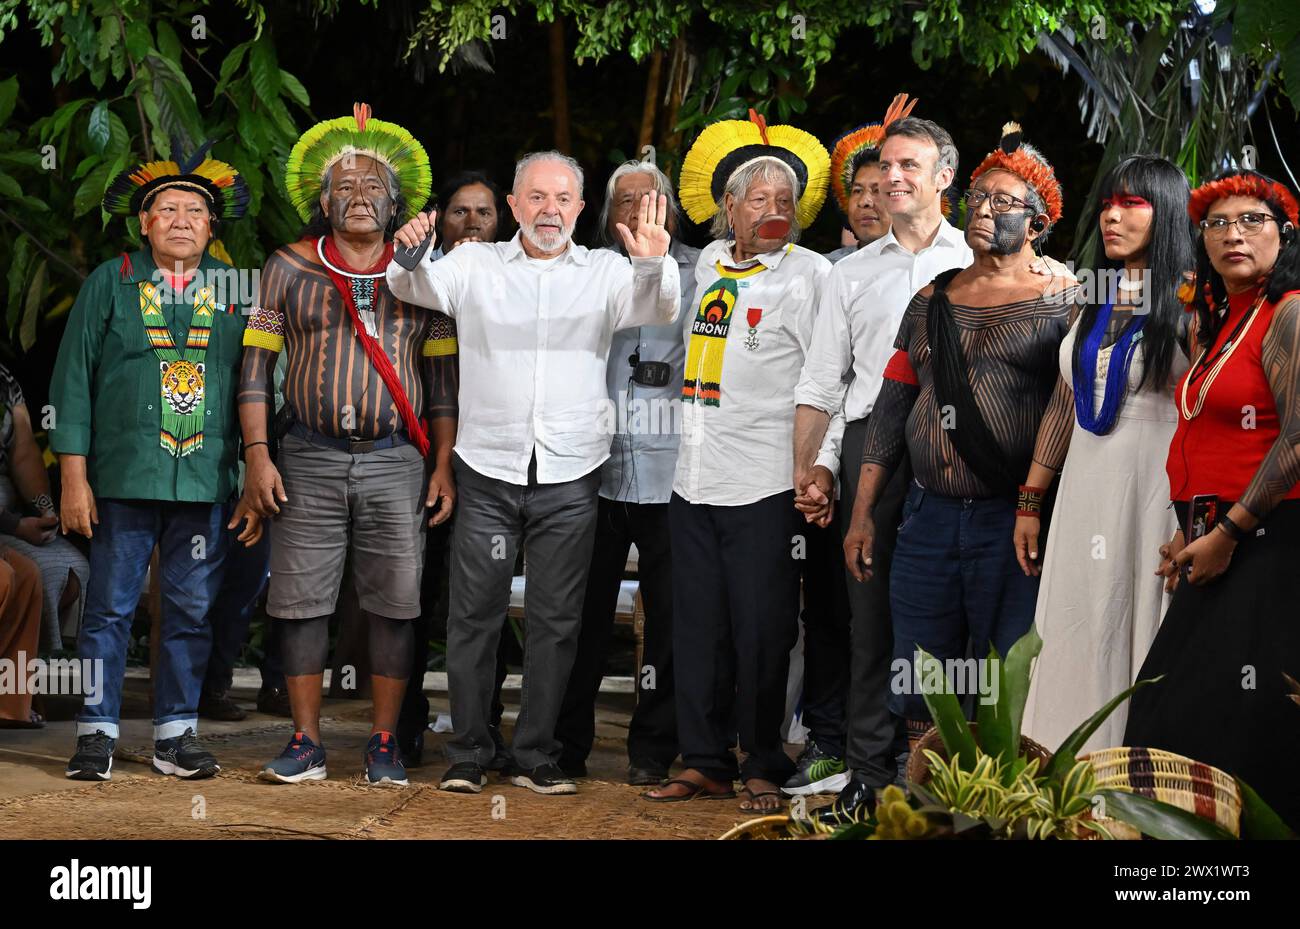 Der brasilianische Yanomami-Schamane und Sprecher des Volkes der Yanomami Davi Kopenawa Yanomami, der französische Präsident Emmanuel Macron, der brasilianische Präsident Luiz Inacio Lula da Silva, der brasilianische indigene Führer des Volkes der Kayapo, Raoni Metuktyre, und die brasilianische indigene Aktivistin und Leiterin des indigenen Frauenverbandes des Xingu Indigenous Park, Watatakalu Yawalapiti, winkte bei einem Treffen auf der Insel Combu vor Belem, Bundesstaat Para, Brasilien, am 26. März 2024. Die französischen und brasilianischen Präsidenten Emmanuel Macron und Luiz Inacio Lula da Silva starteten am Dienstag ein Programm, das darauf abzielte, bis zu einem zu erhöhen Stockfoto